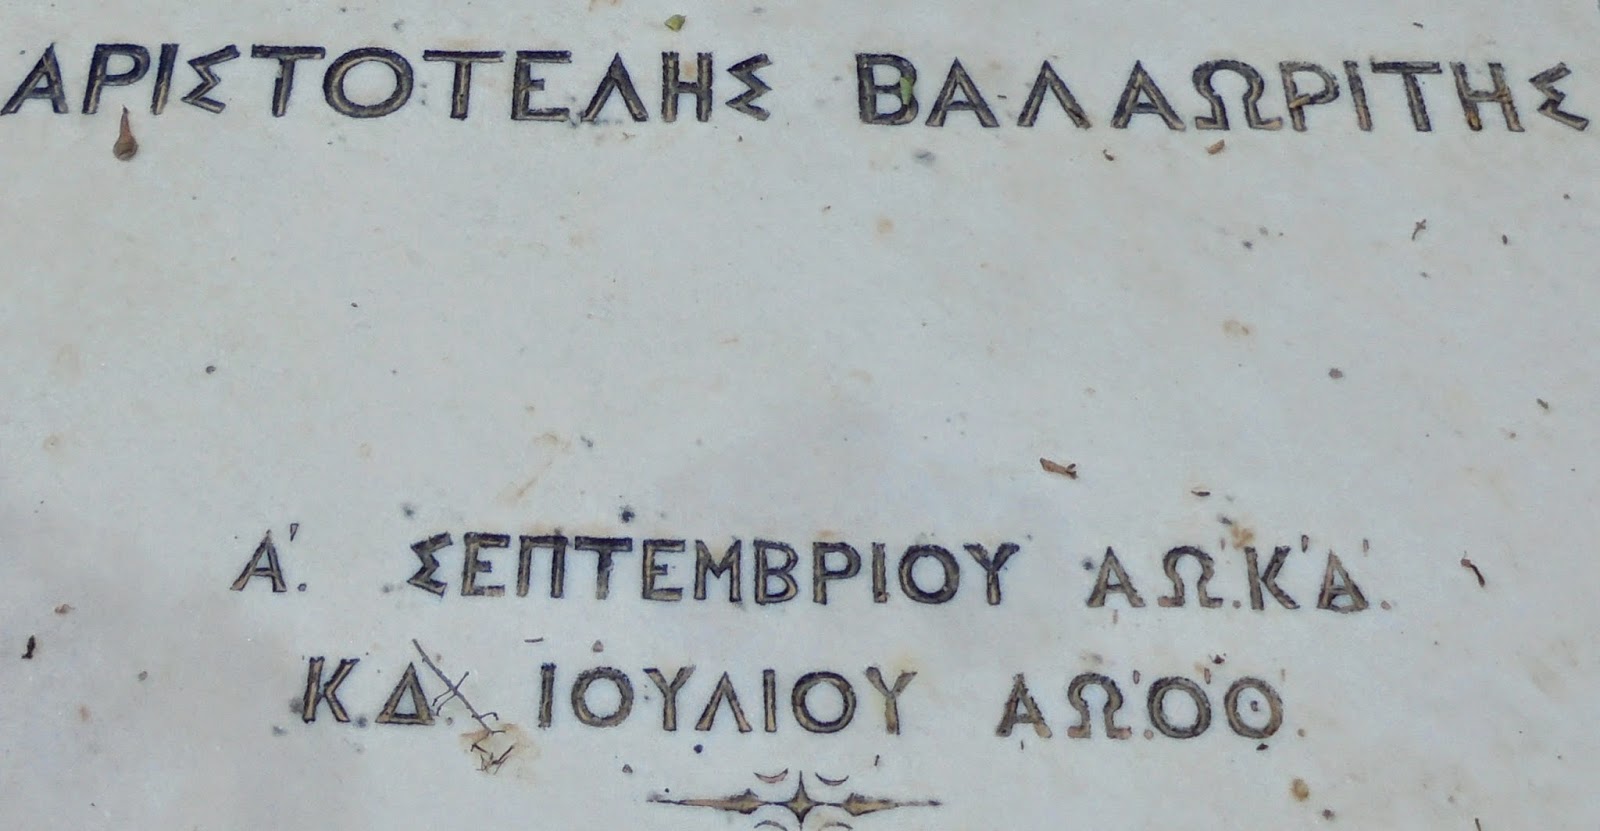 το ταφικό μνημείο του Αριστοτέλη Βαλαωρίτη στο ναό του Παντοκράτορα Λευκάδας